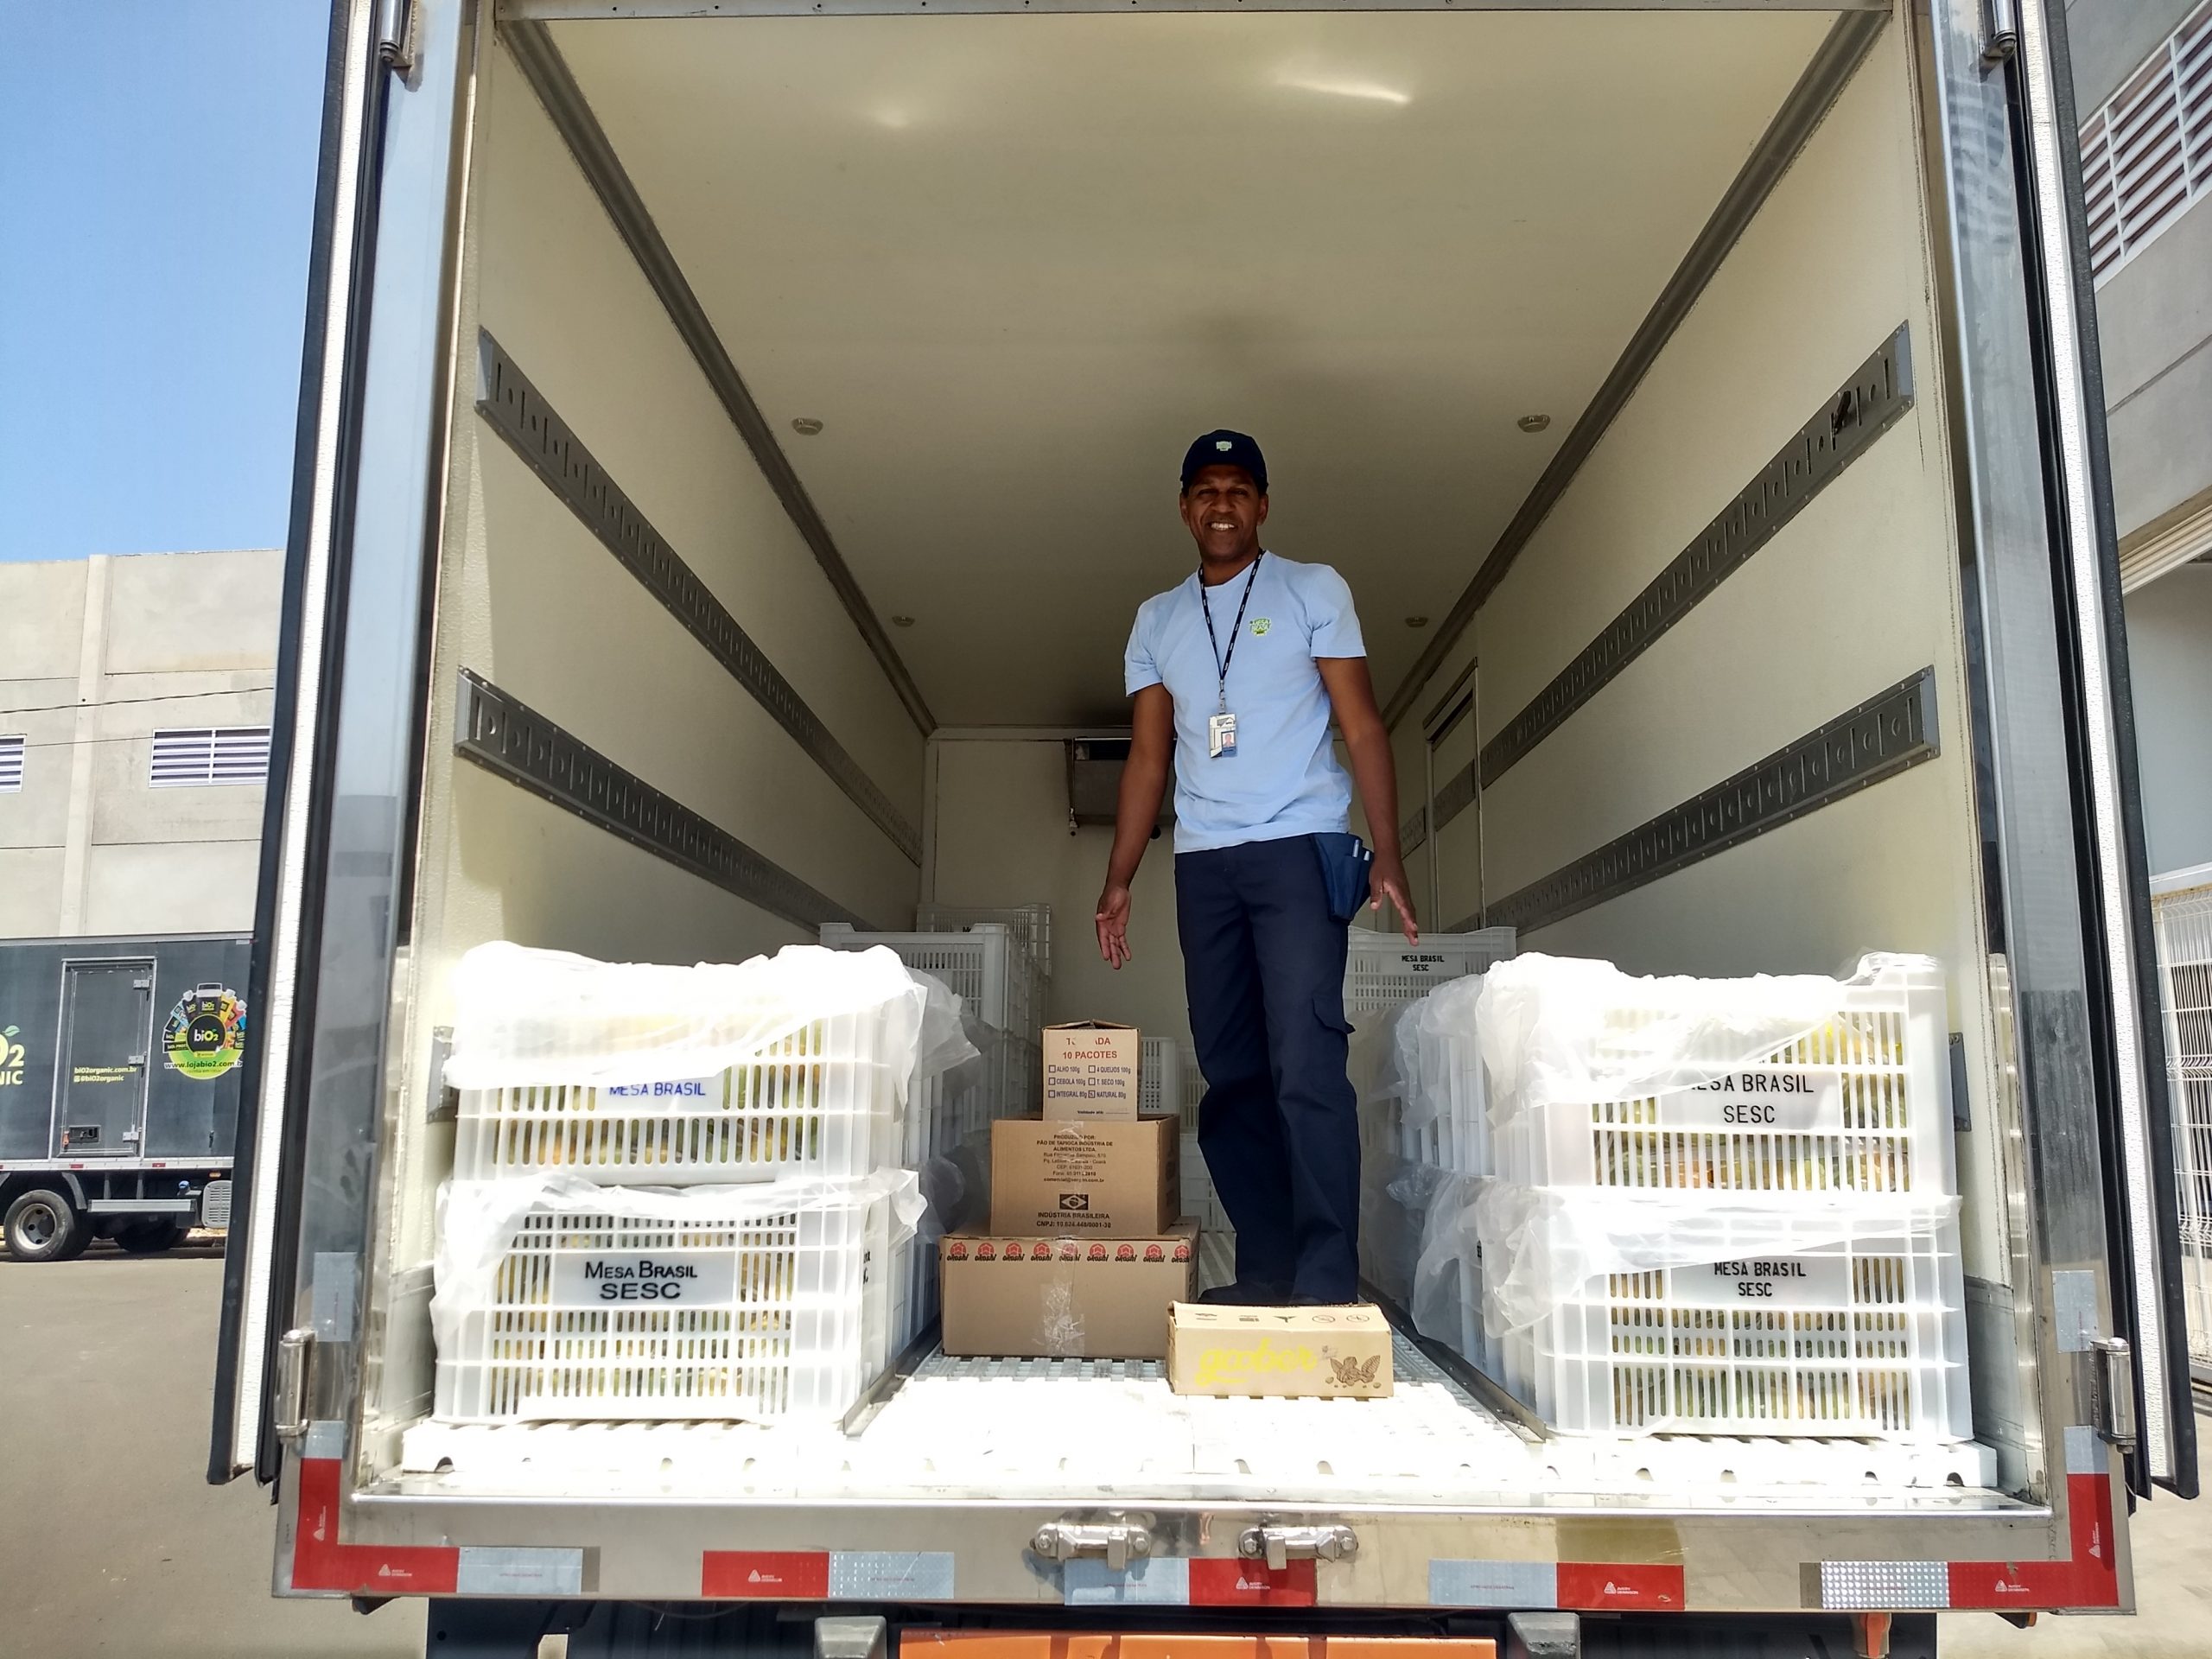 Funcionário do Mesa Brasil recebendo doações da Lourenço, ele está dentro do Baú do Caminhão do Mesa Brasil, sorrindo, com as caixas de doação da Lourenço Alimentos no chão.